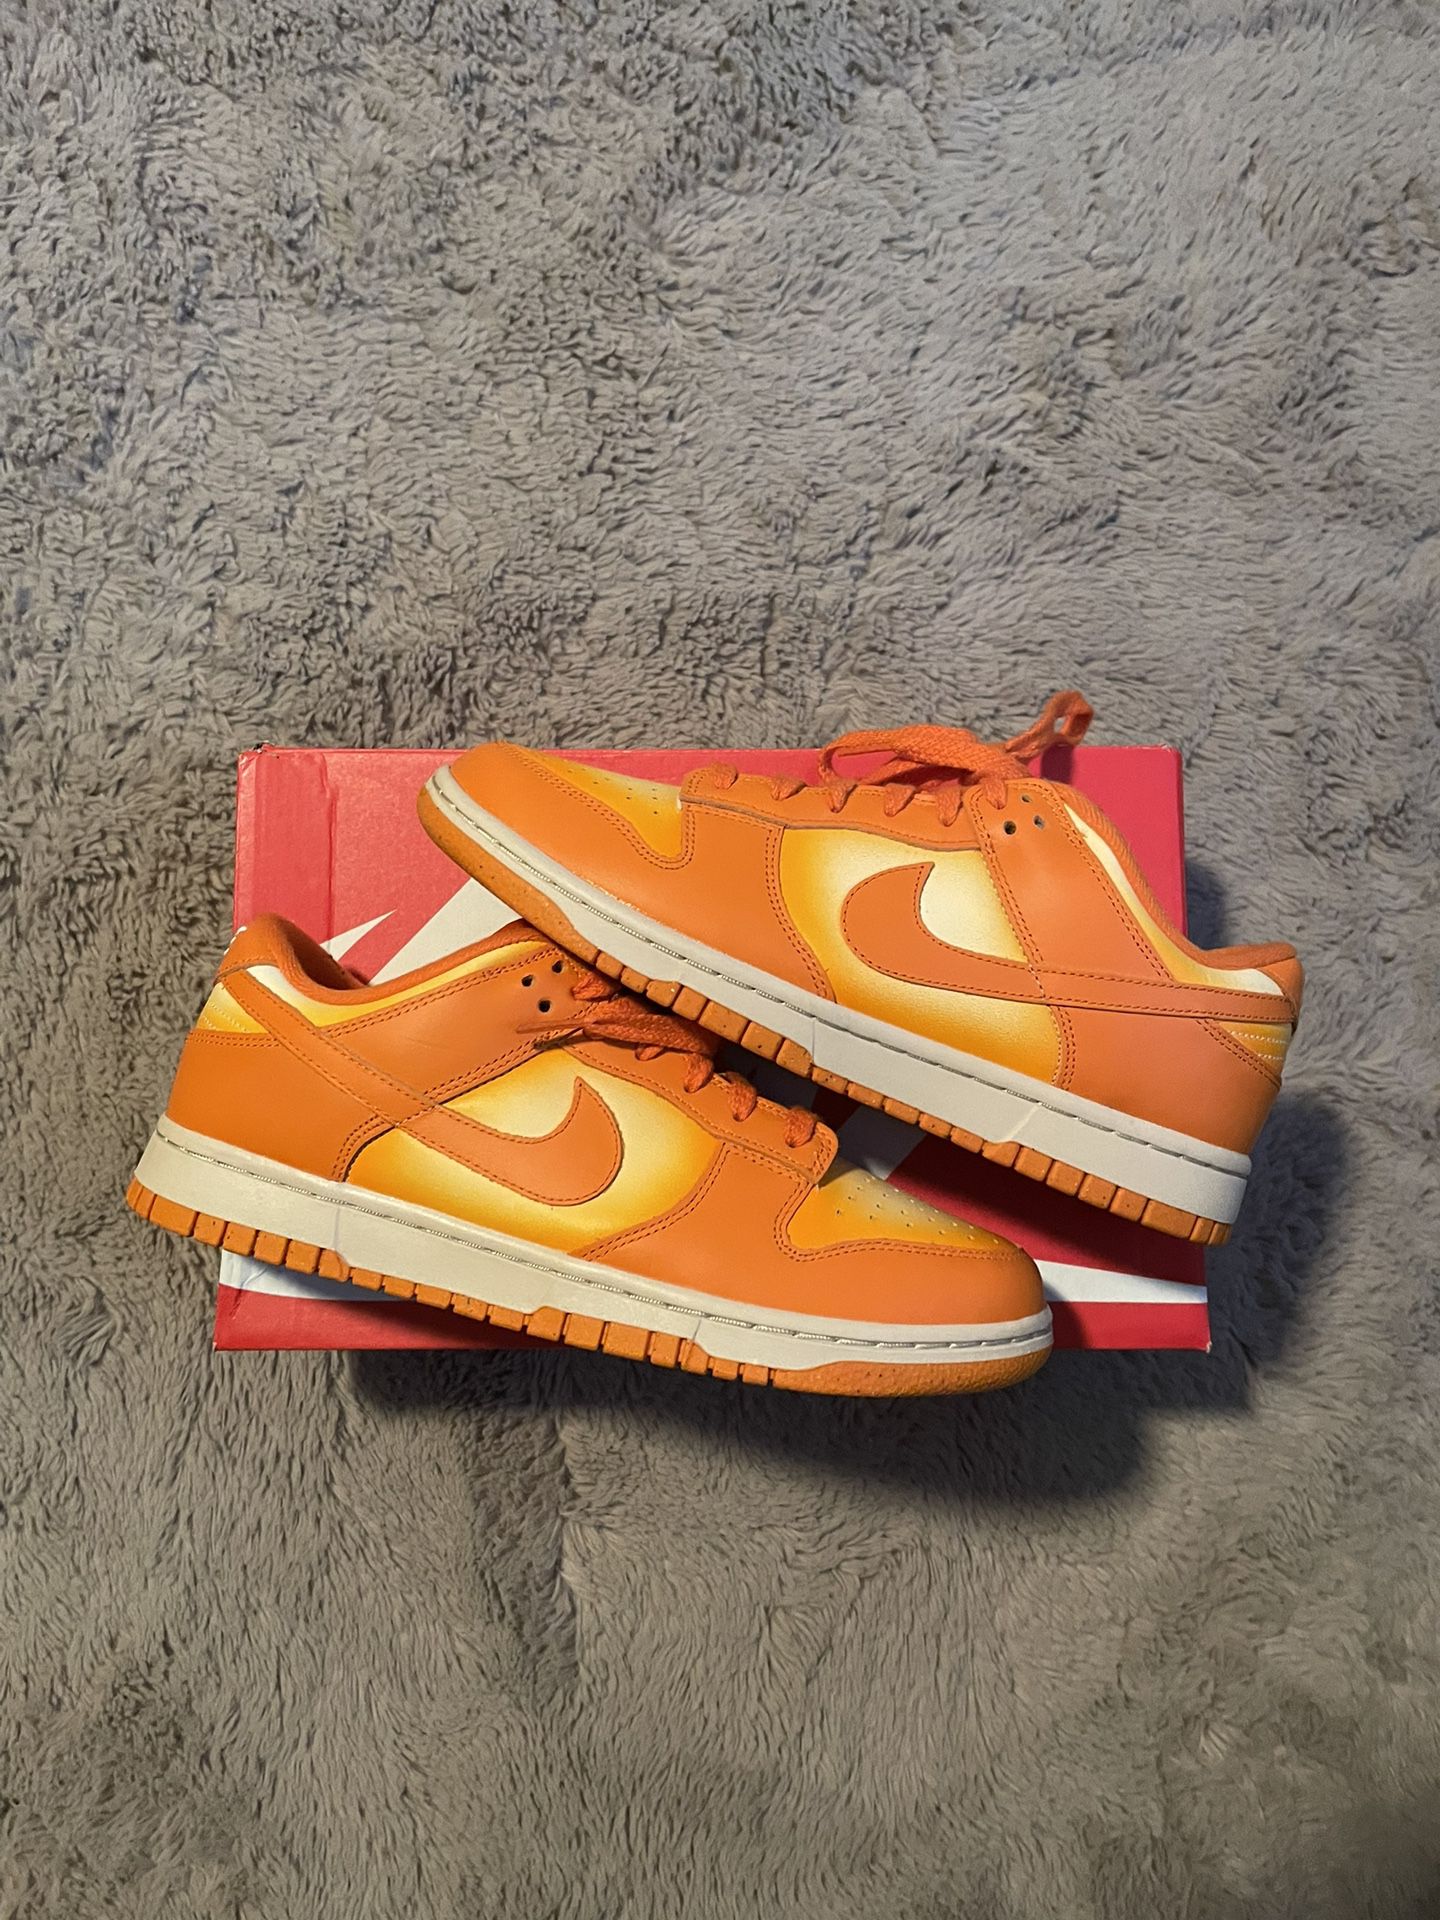 Nike Dunk low Magma orange